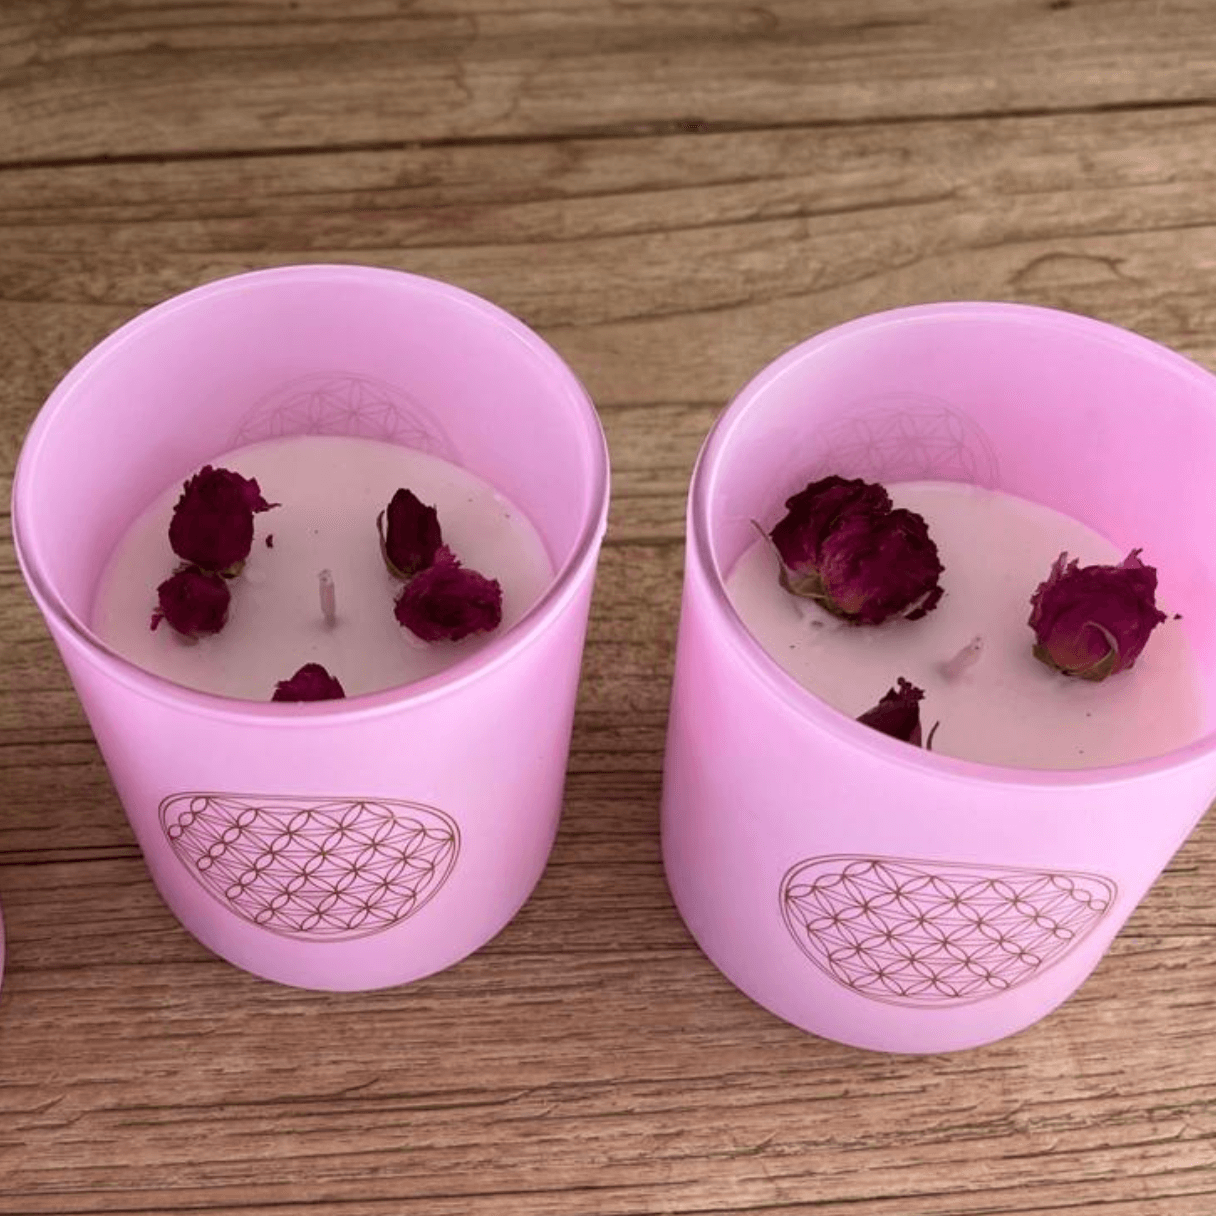 Vela "Antiestrés" con aroma a rosas en vaso rosa con tapa de madera